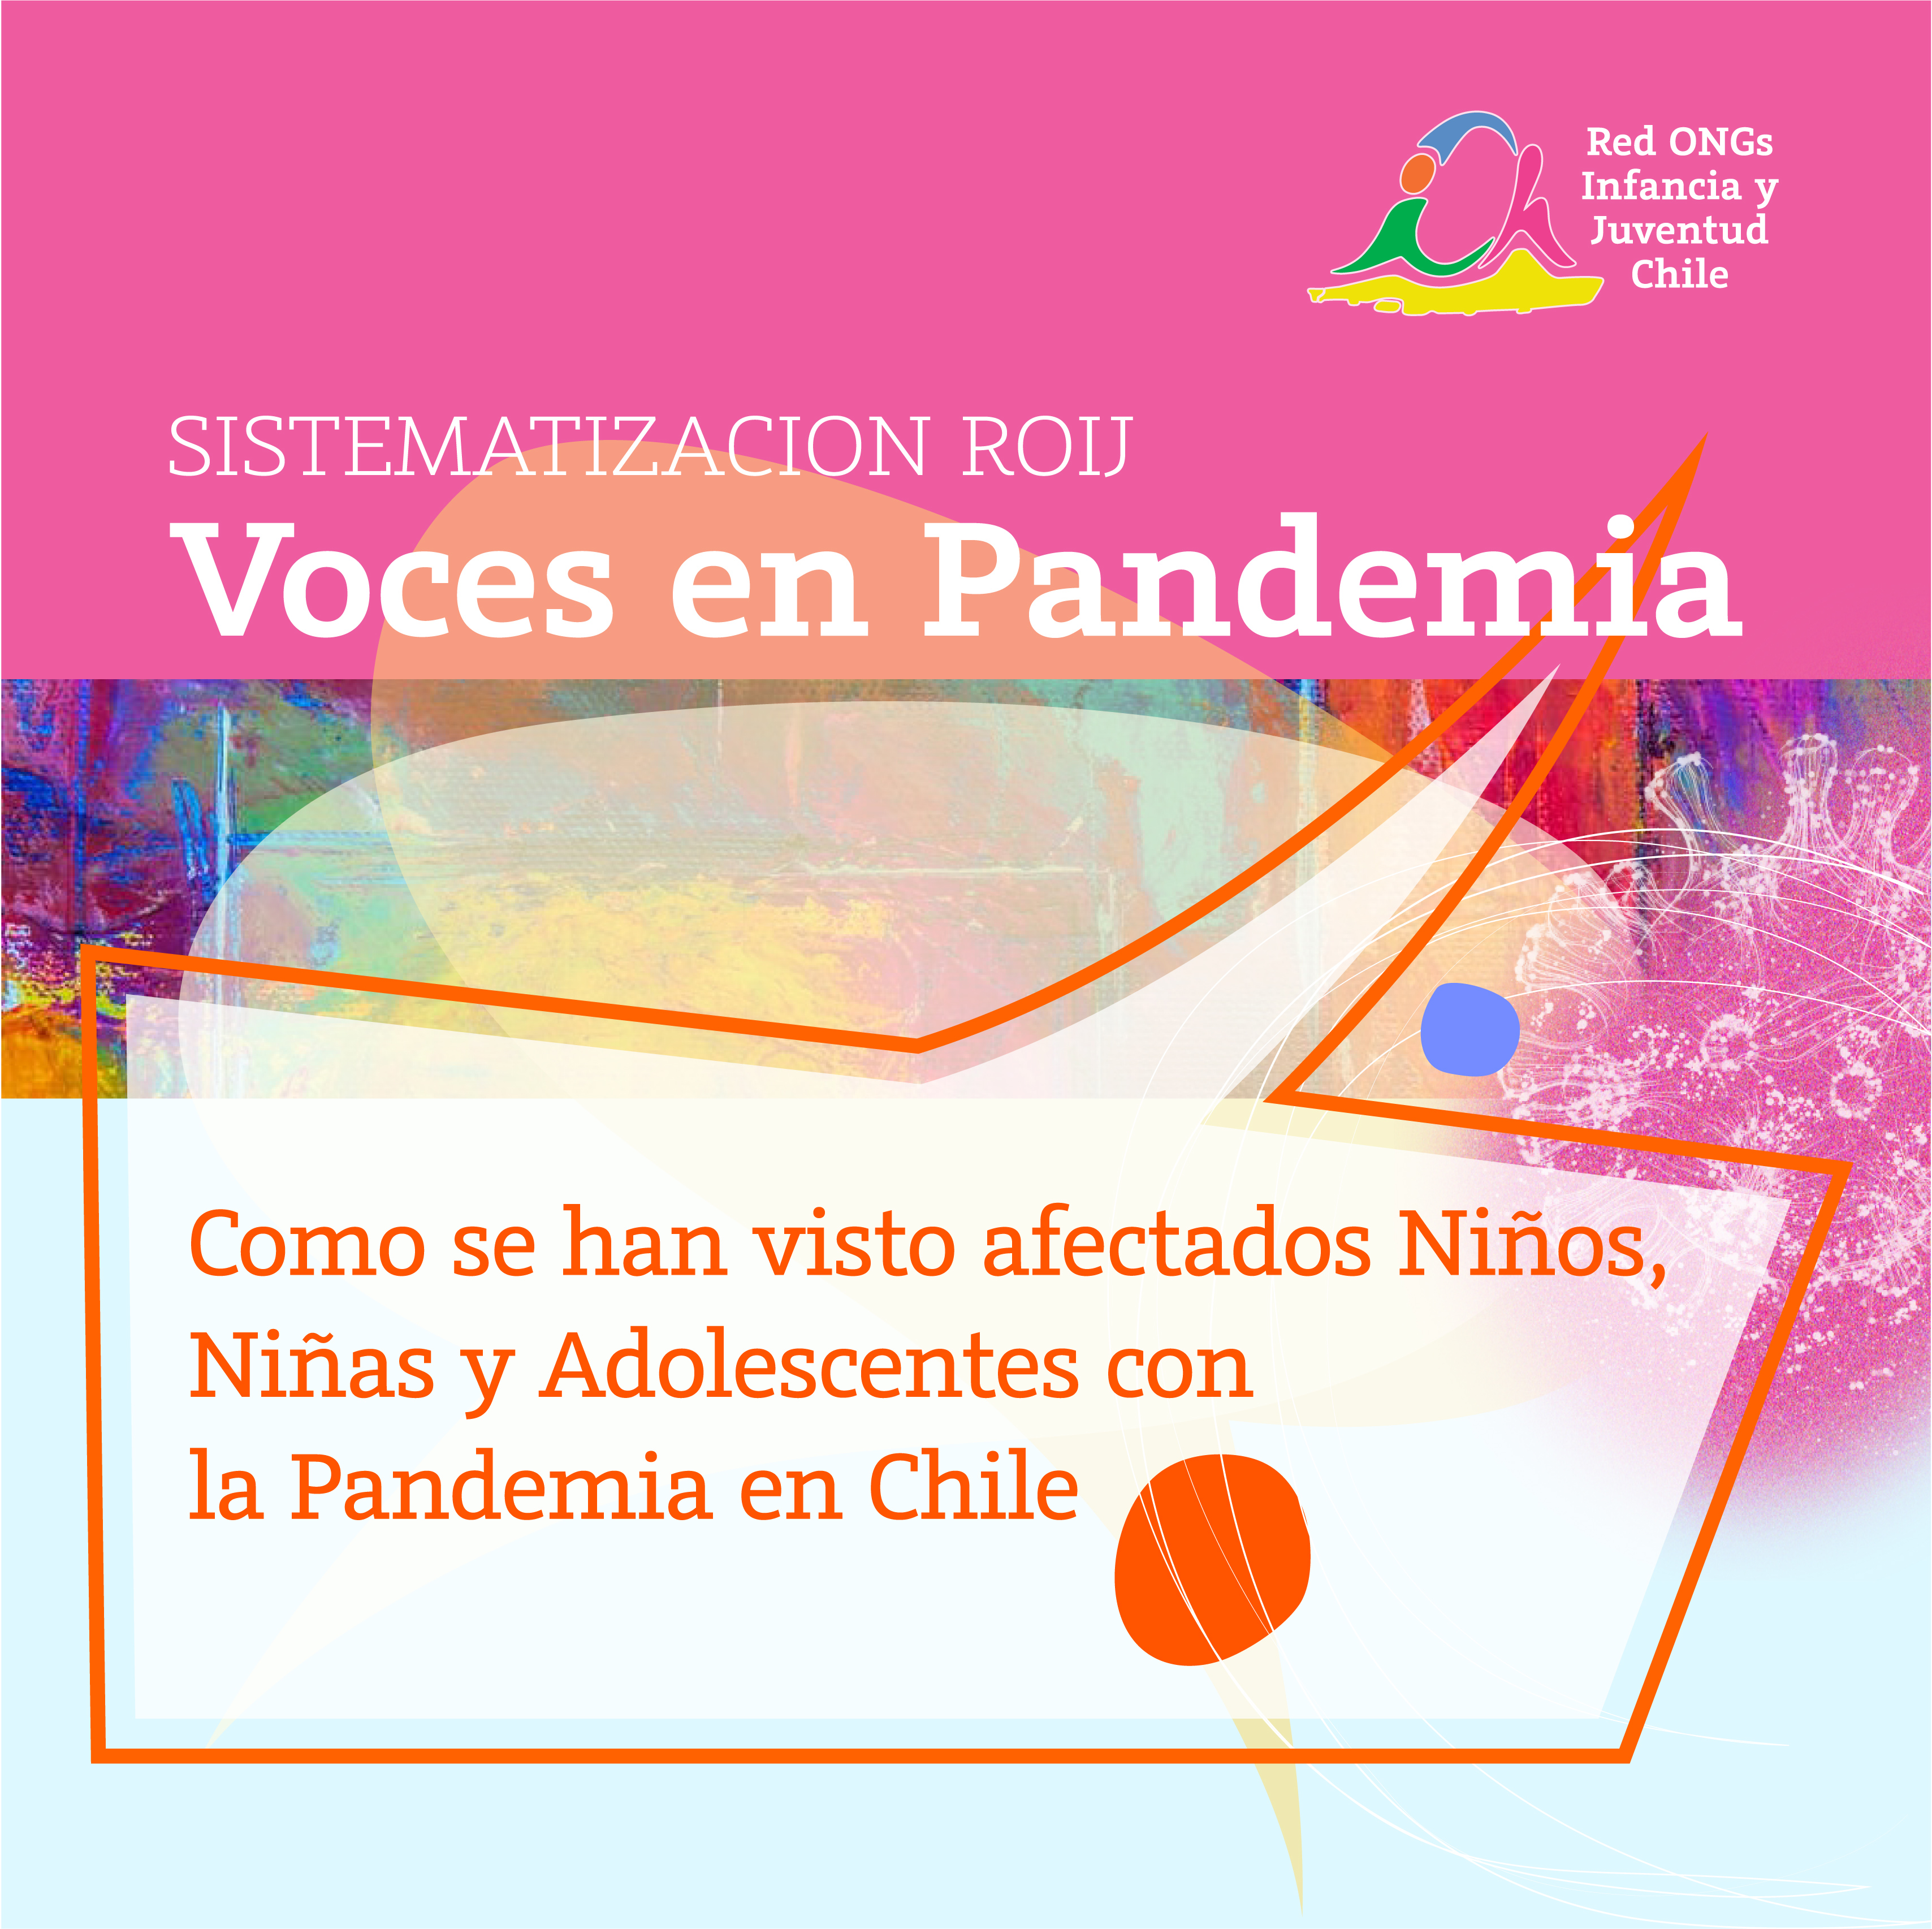 Red de ONGs de Infancia y Juventud ROIJ Chile Publica Documento Sobre Afectación de NNA en Pandemia COVID19